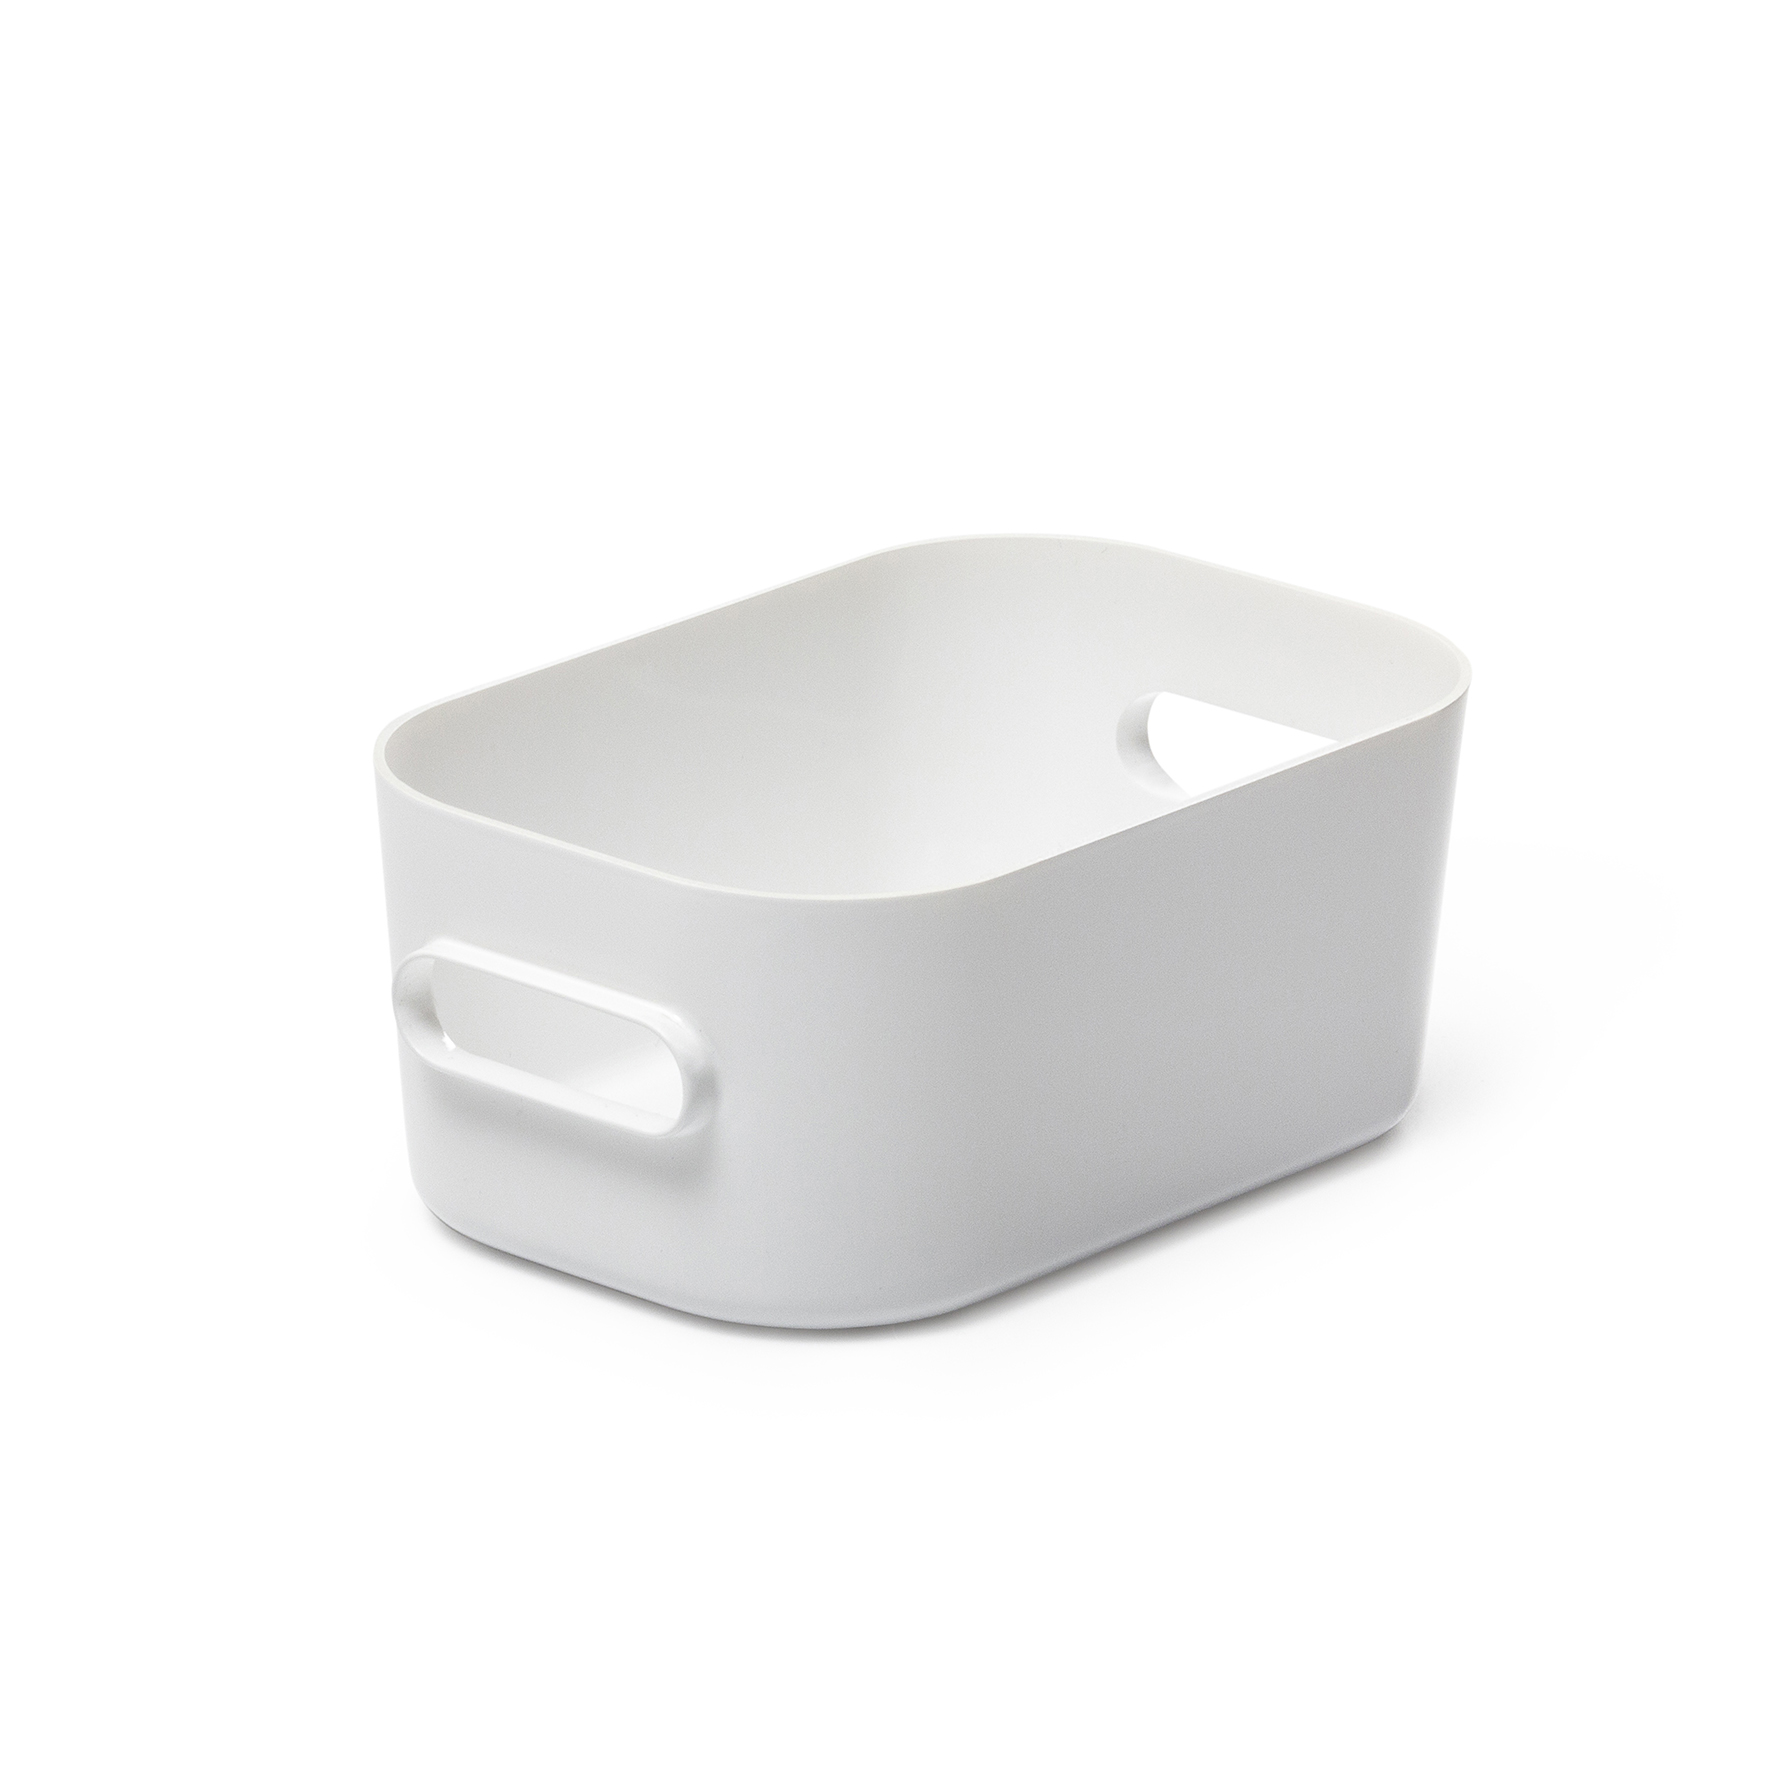 [2362460] Förvaringsbox Compact XS vit